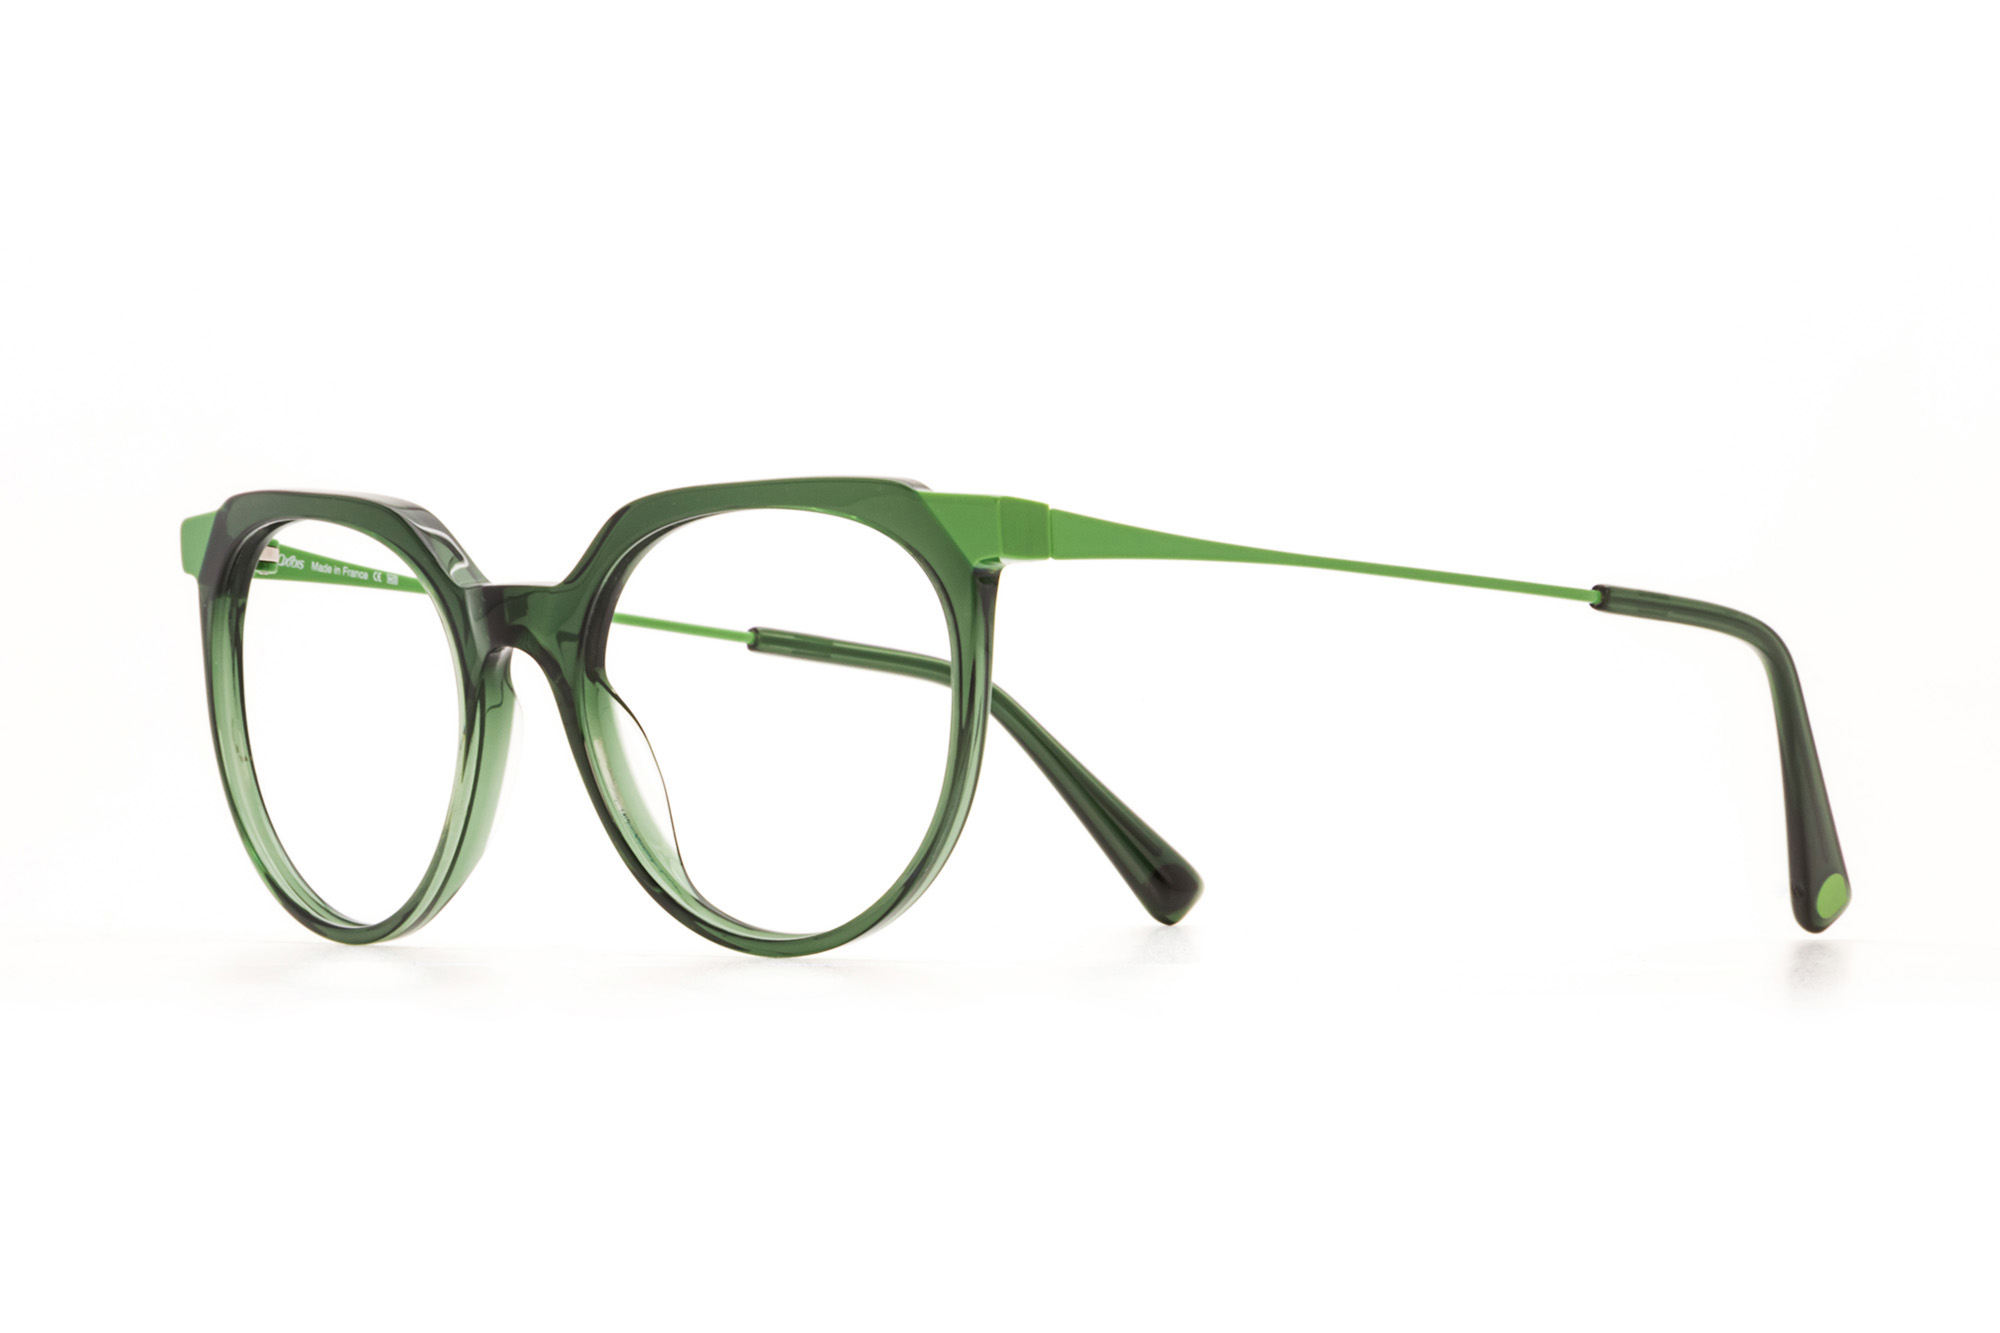 Kullanıma hazır optik tarzda işlenmiş camları ve optik uyumlu çerçevesiyle Oxibis Tango TA1C4 orta ekartman açık ve koyu yeşil renkli cat eye model kadın gözlüğünü optisyen veya gözlükçülerin sunacağı numarasız veya numaralı cam özelleştirmeleriyle size en yakın gözlükçüden satın alabilirsiniz.